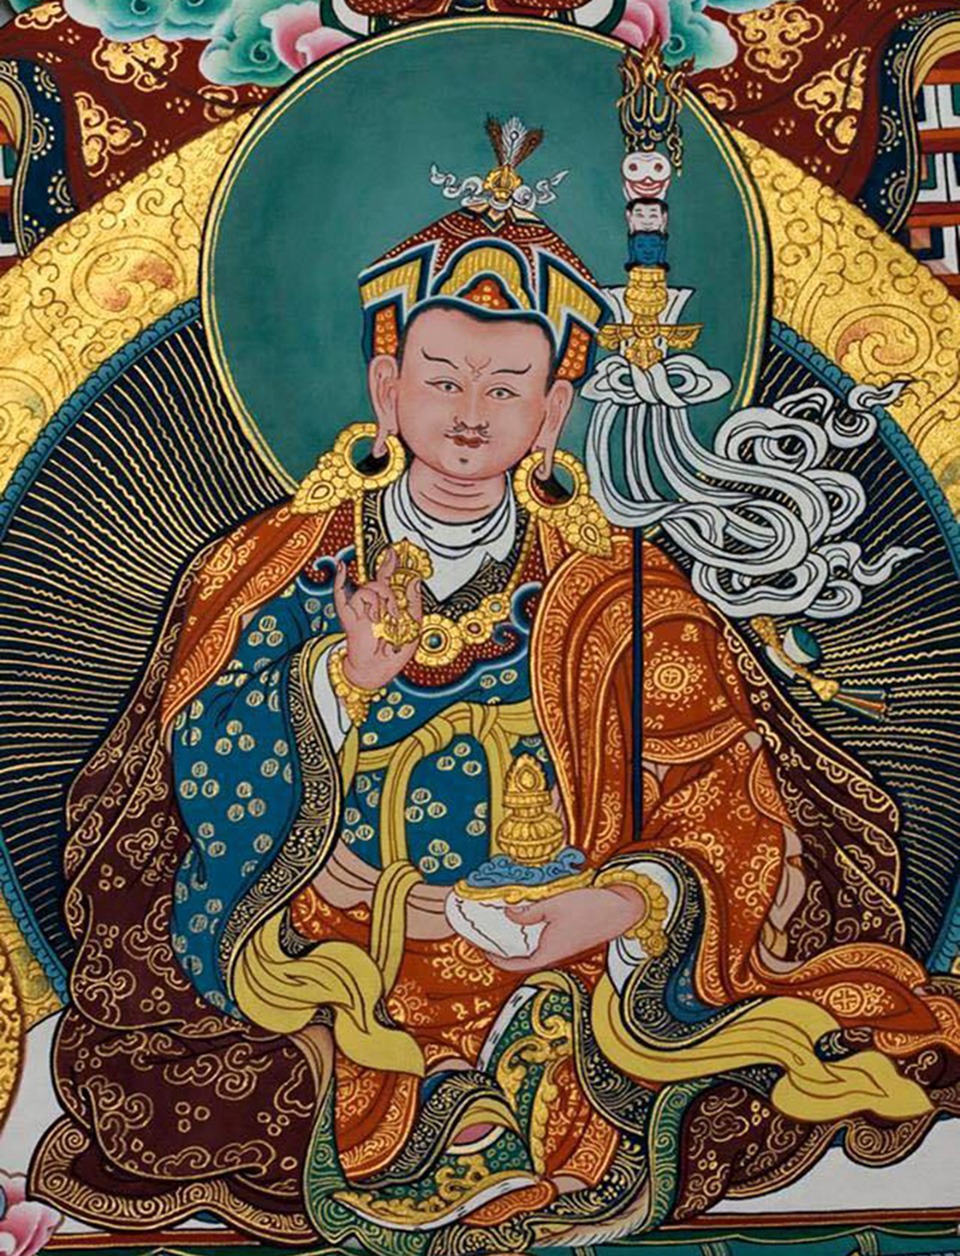 Padmasambhava / Guru Rinpoche